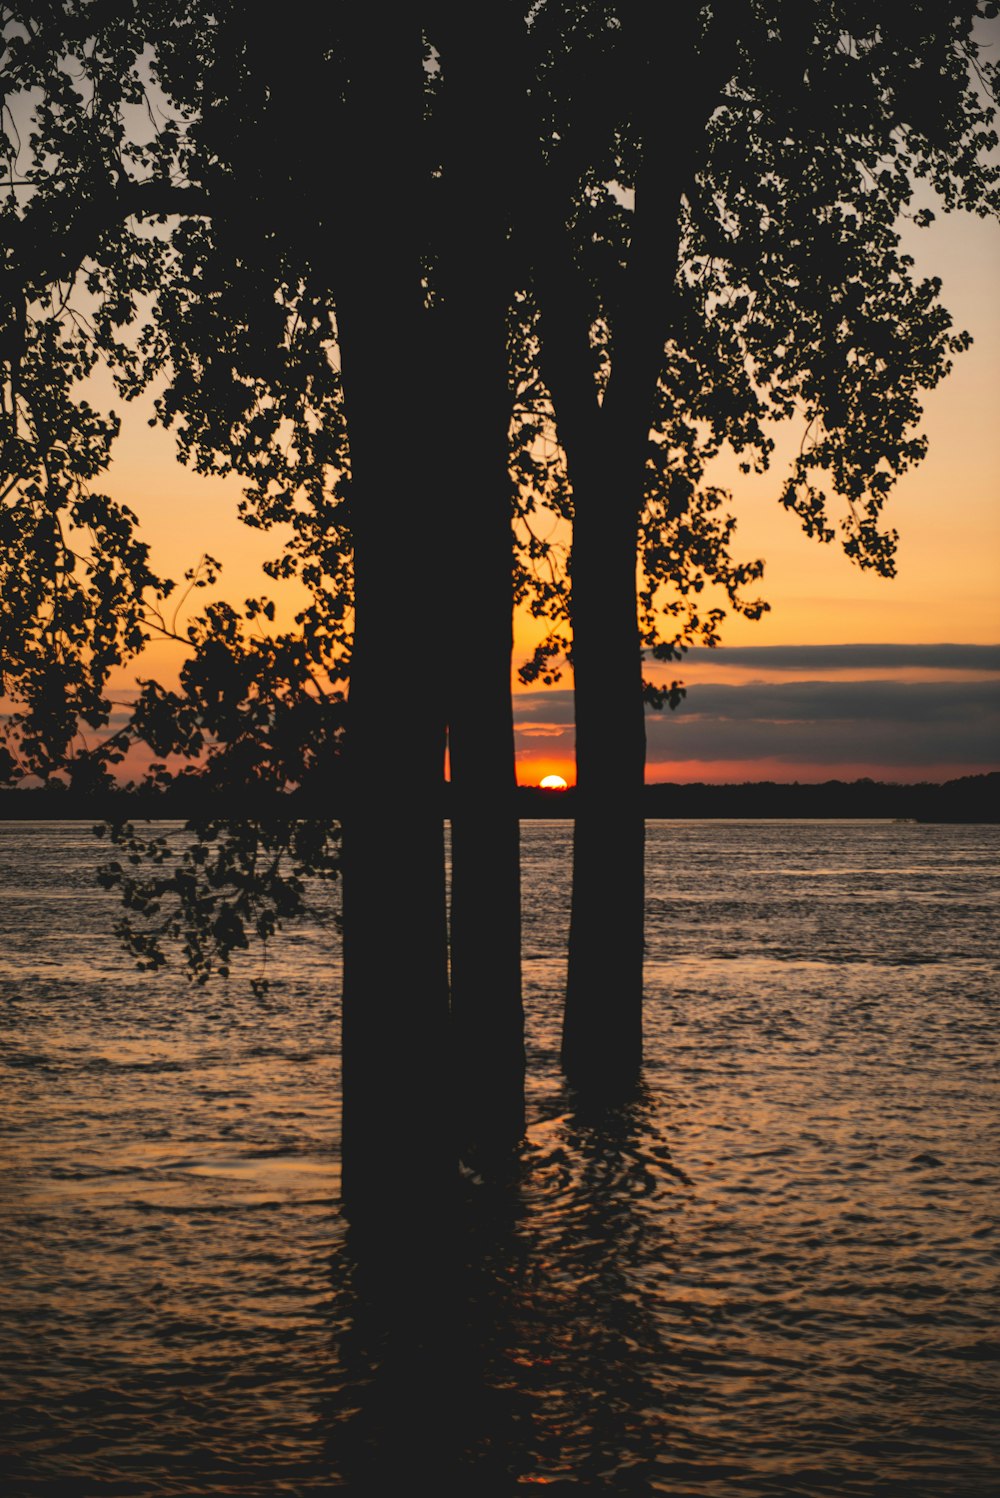 Silueta de árboles en la orilla del mar durante la puesta del sol